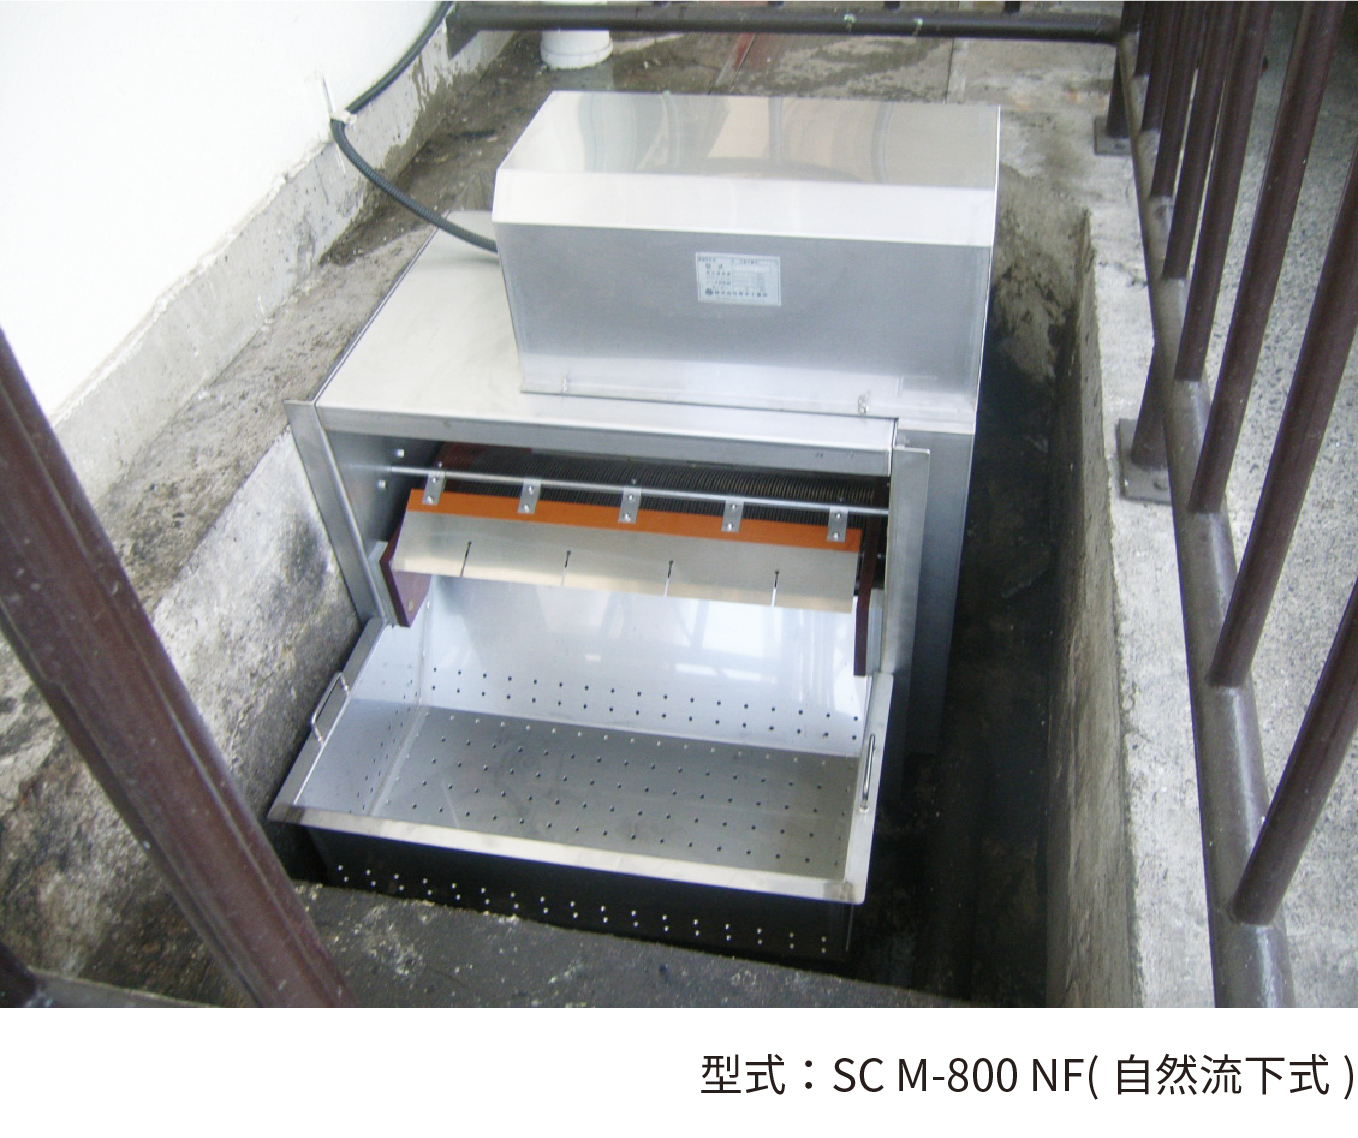 G&R・SC 型 自然流下式 詳細 イメージ 型式：SC M-800 NF(自然流下式)